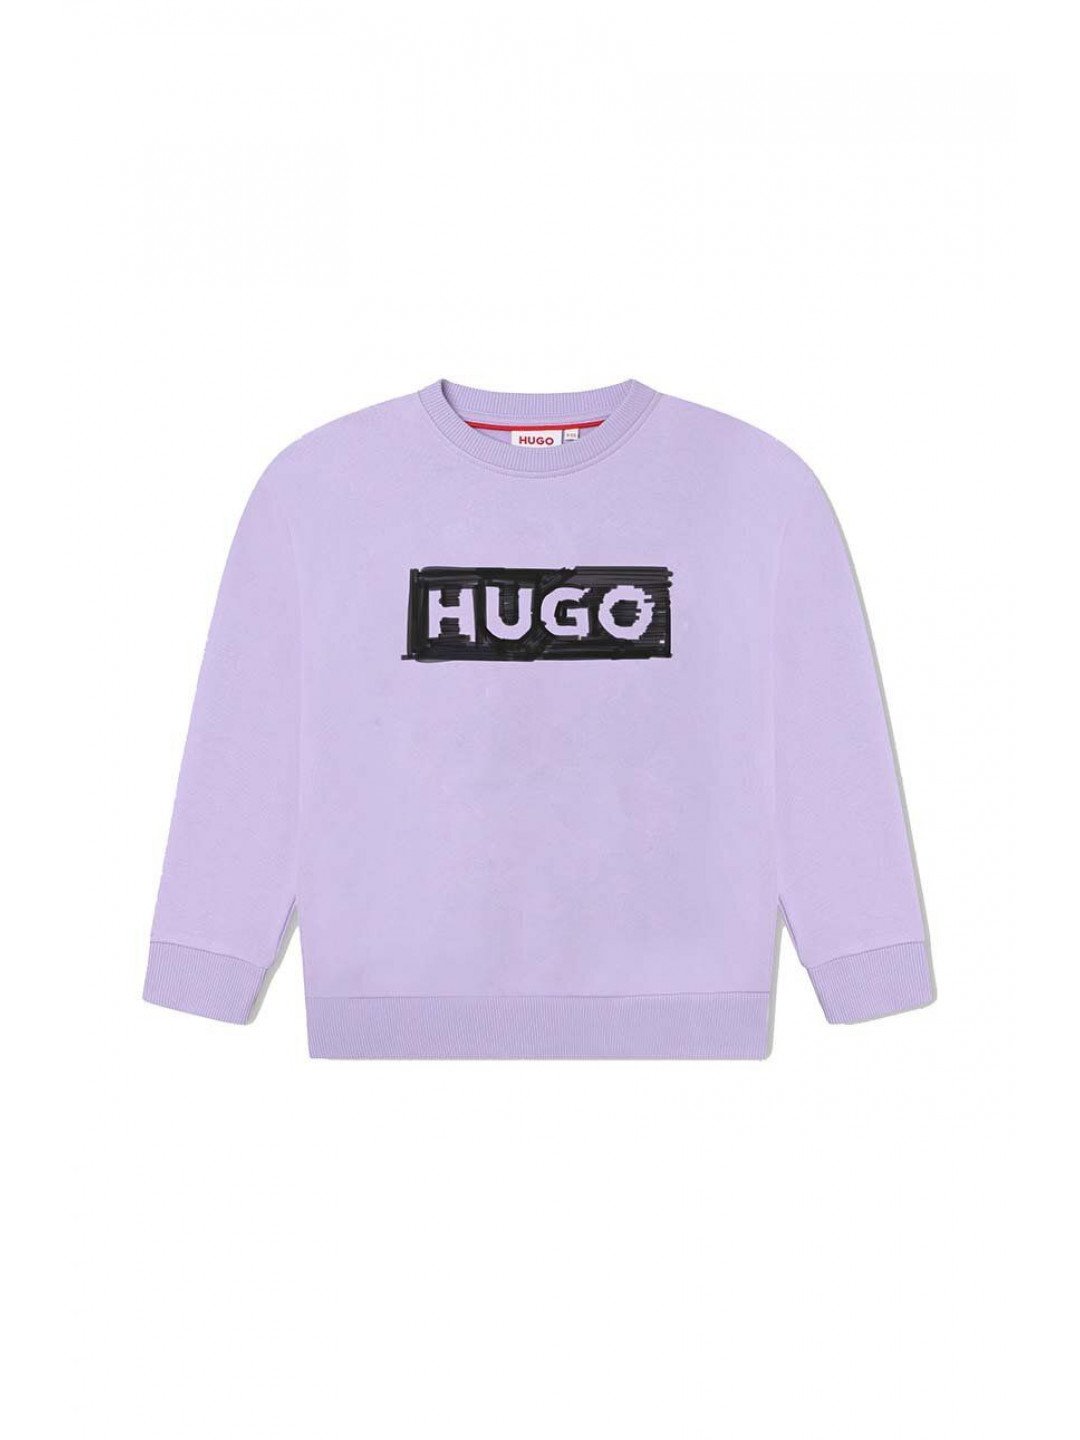 Dětská mikina HUGO fialová barva s potiskem